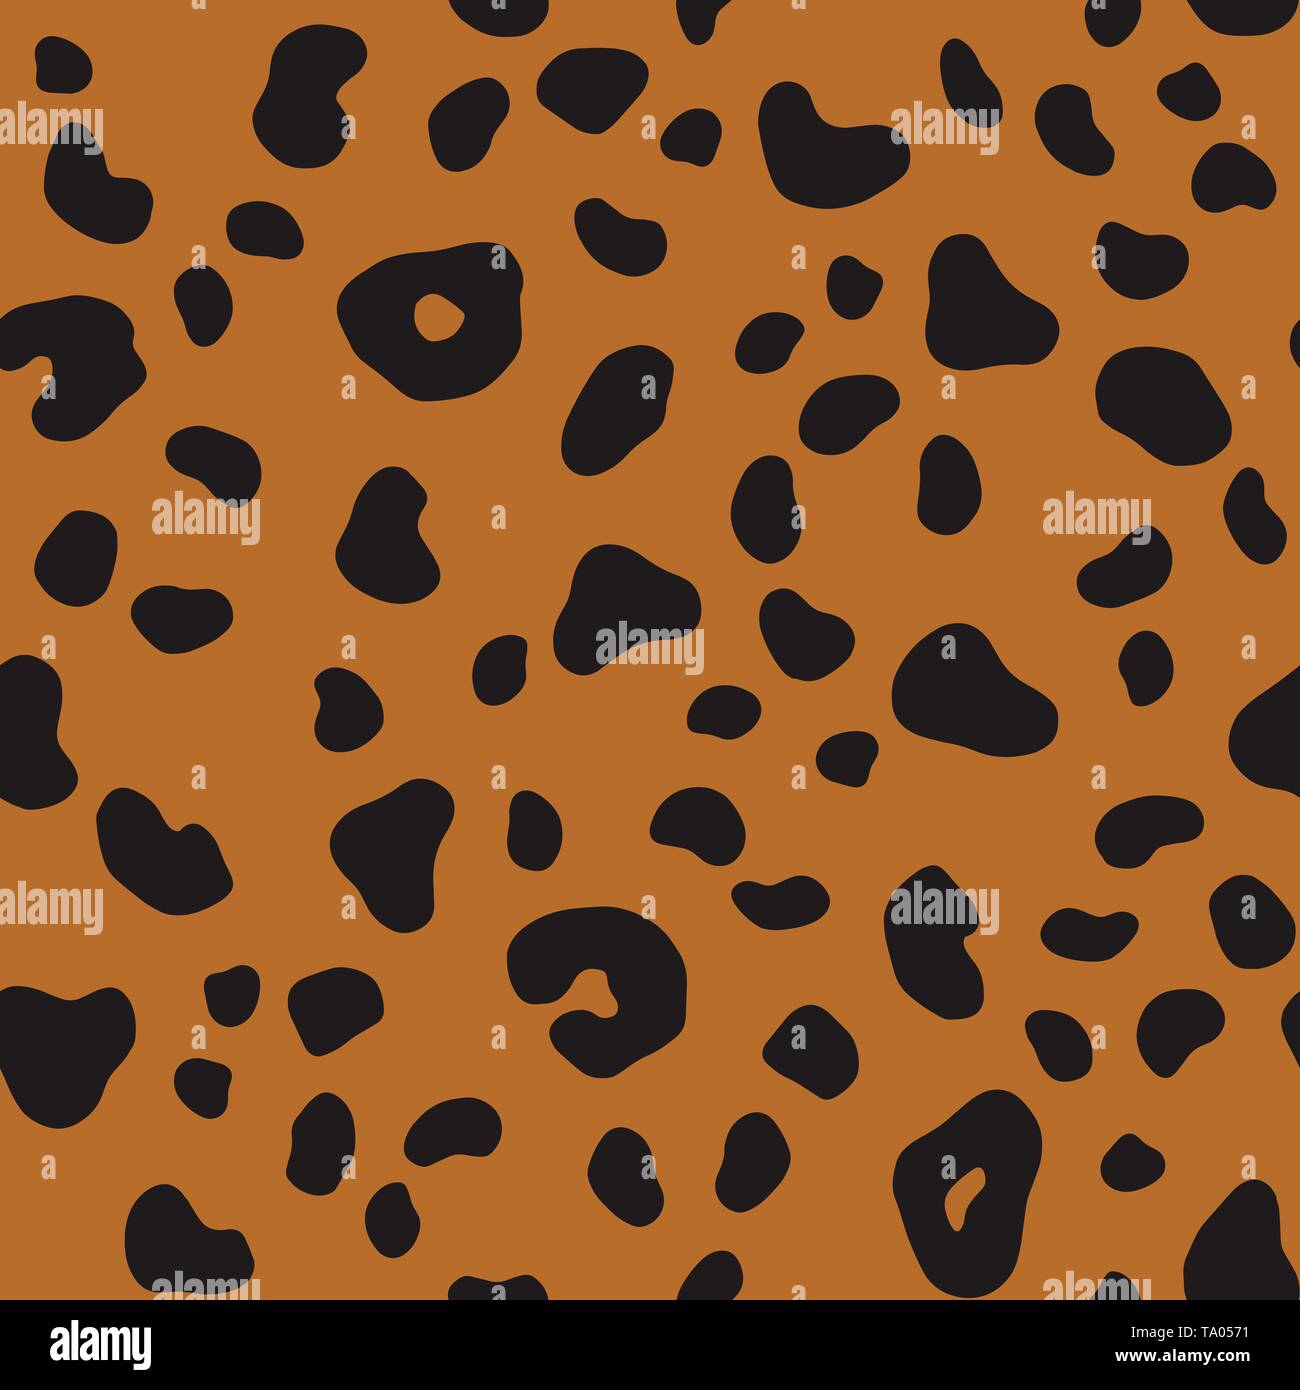 Vektor braun Animal-print. Nahtlose Leopard Muster Design für Stoff und Textil-, Verpackungs-, Web- und Social Media Design. Stock Vektor